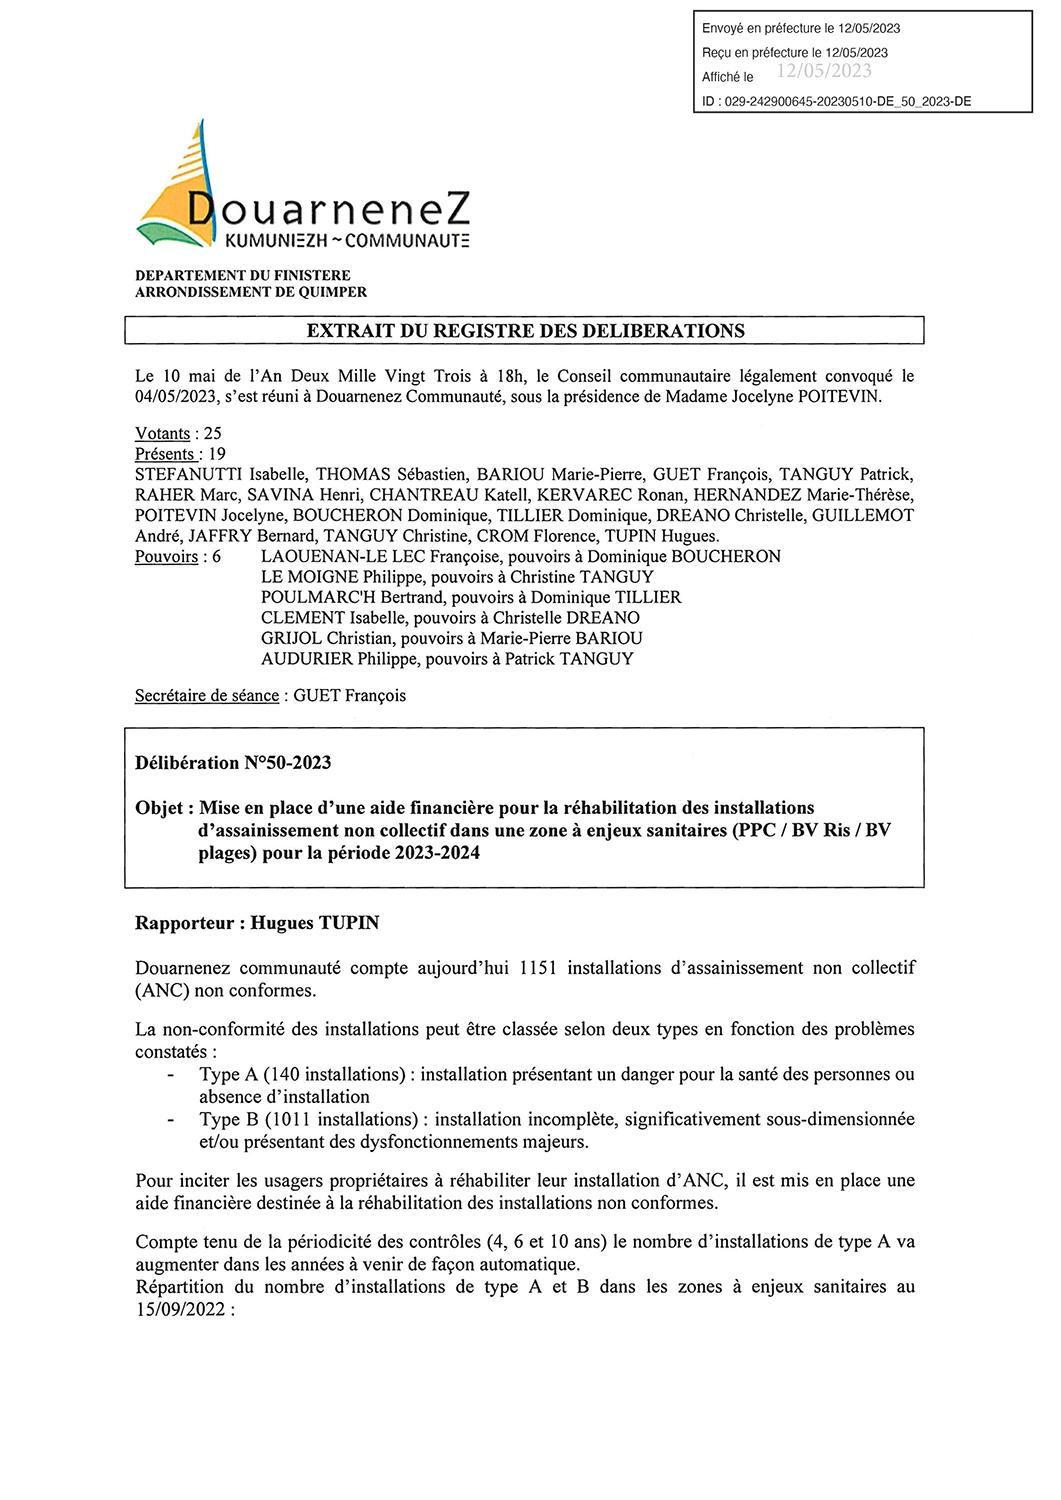 DE 50 2023 Aide financière pour la réhabilitation des installations ANC tamp (1) 1